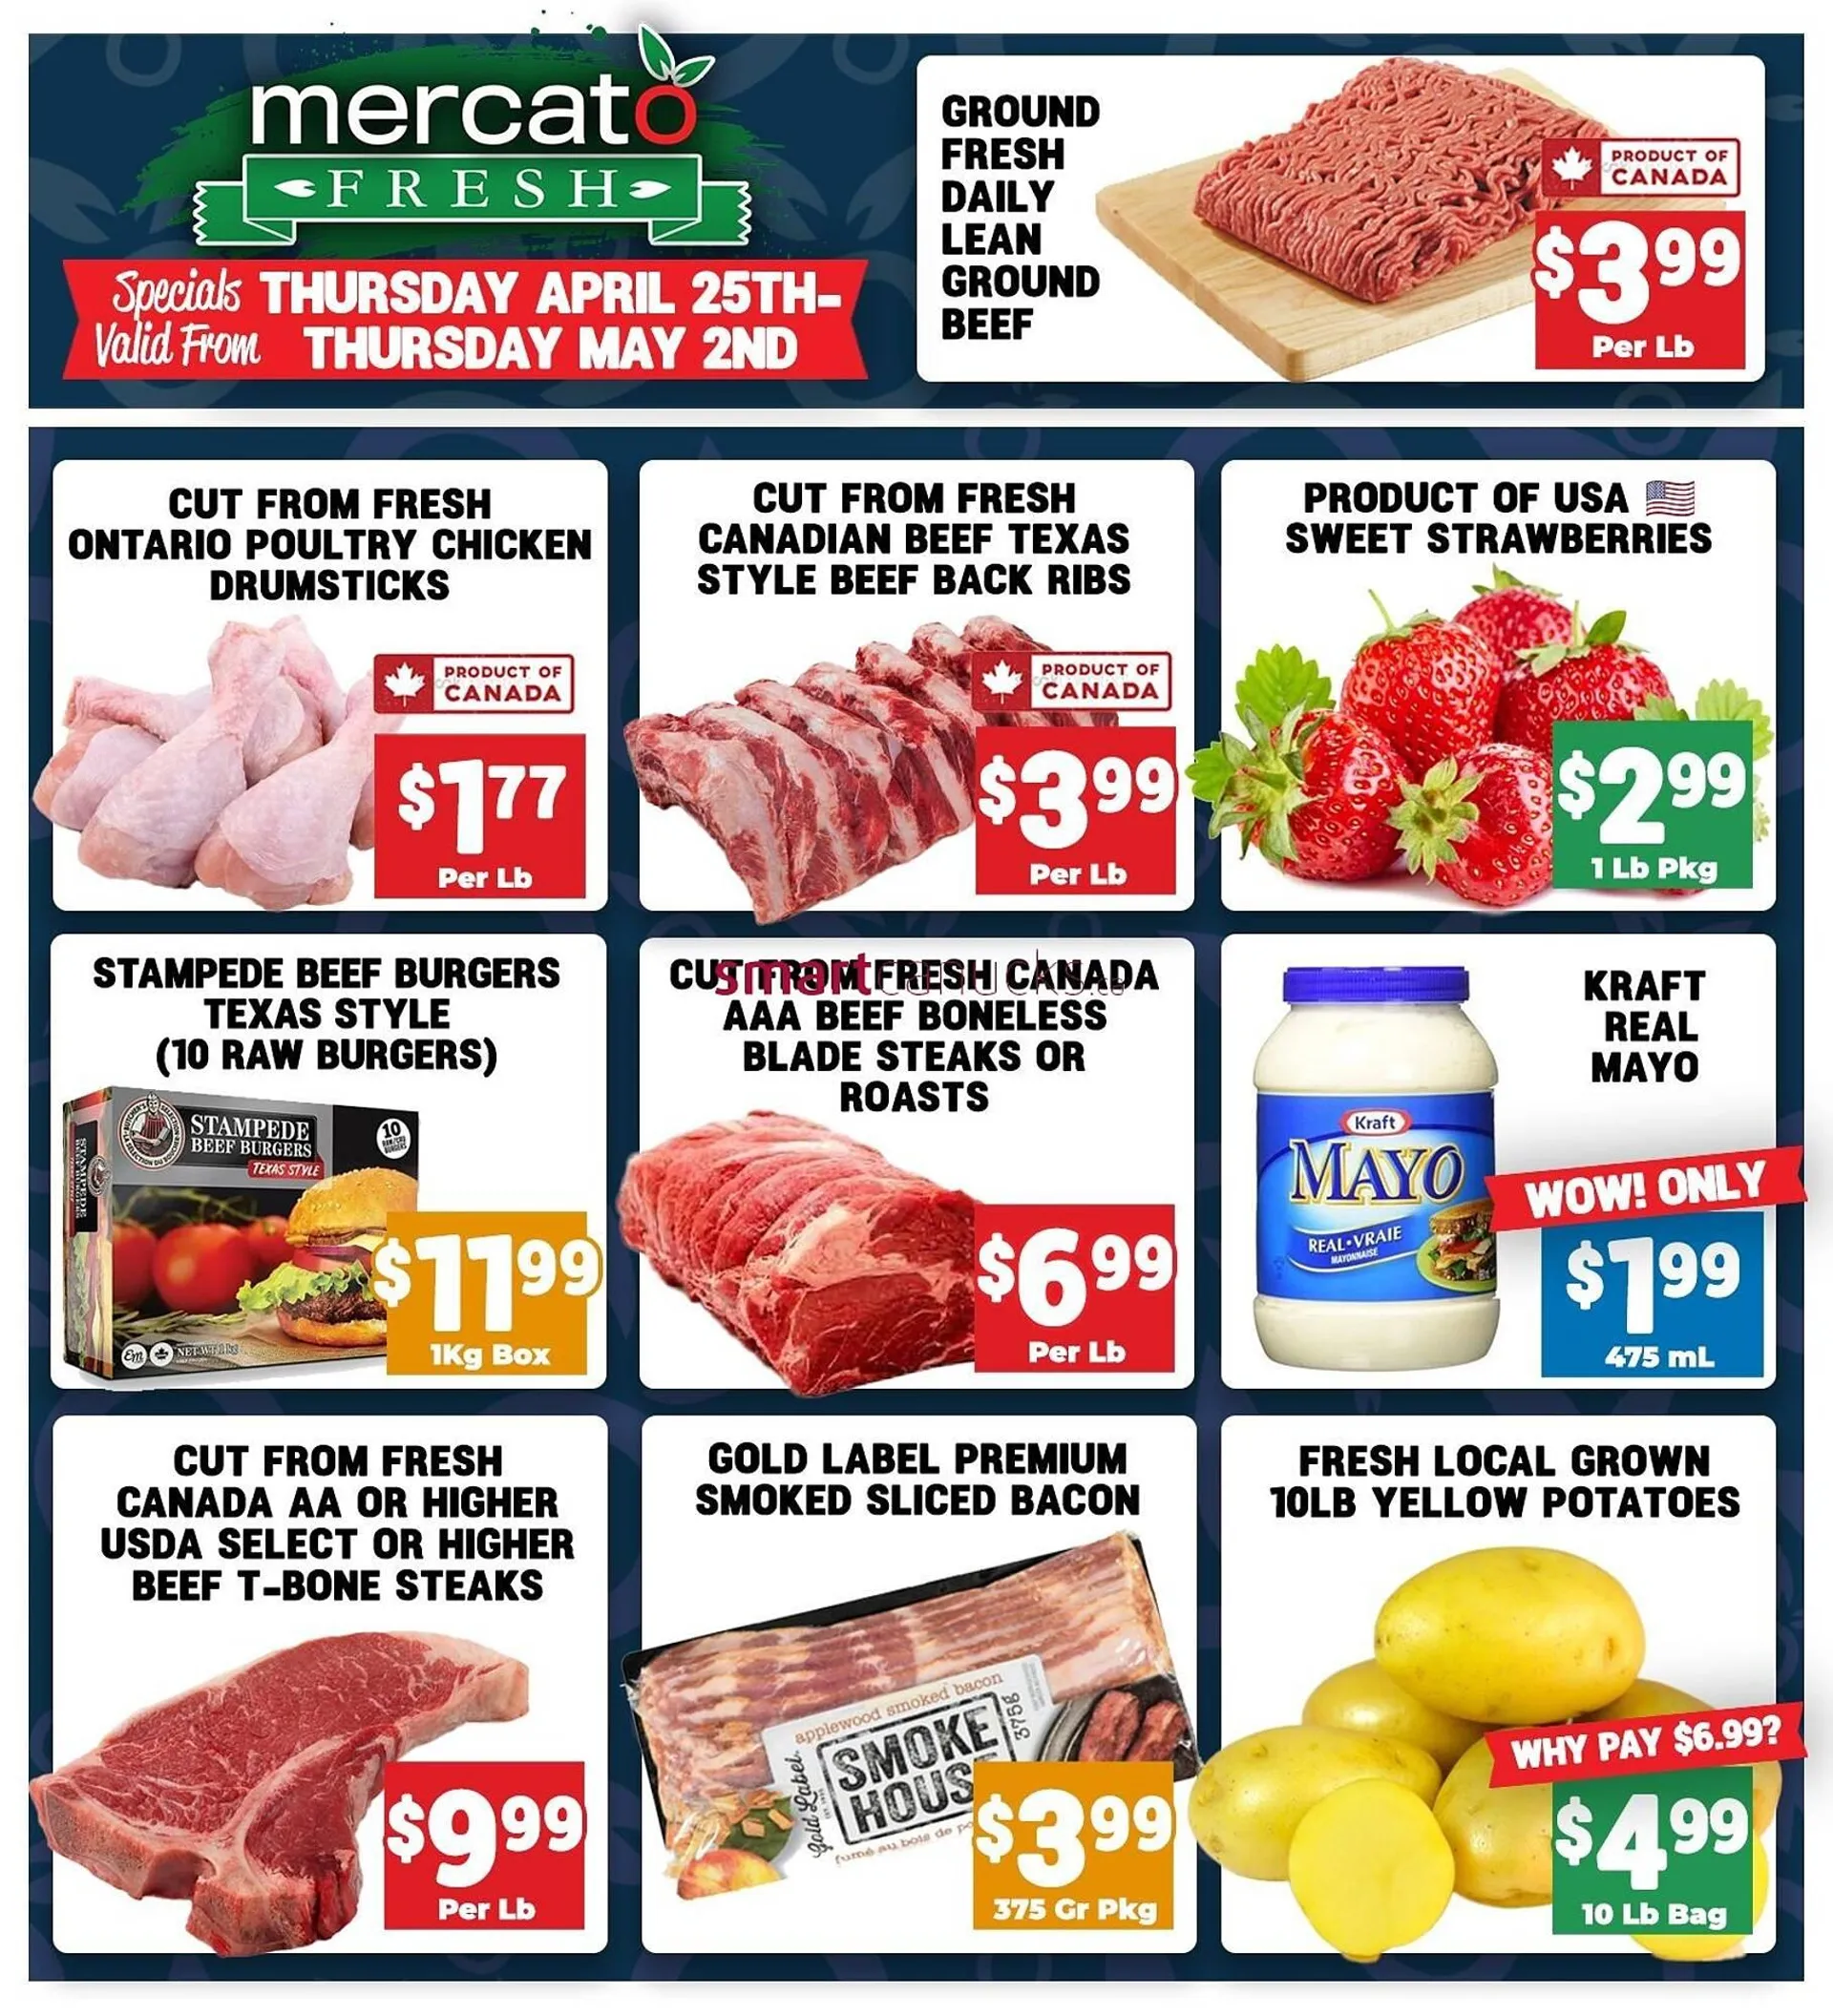 Mercato Fresh flyer - 1